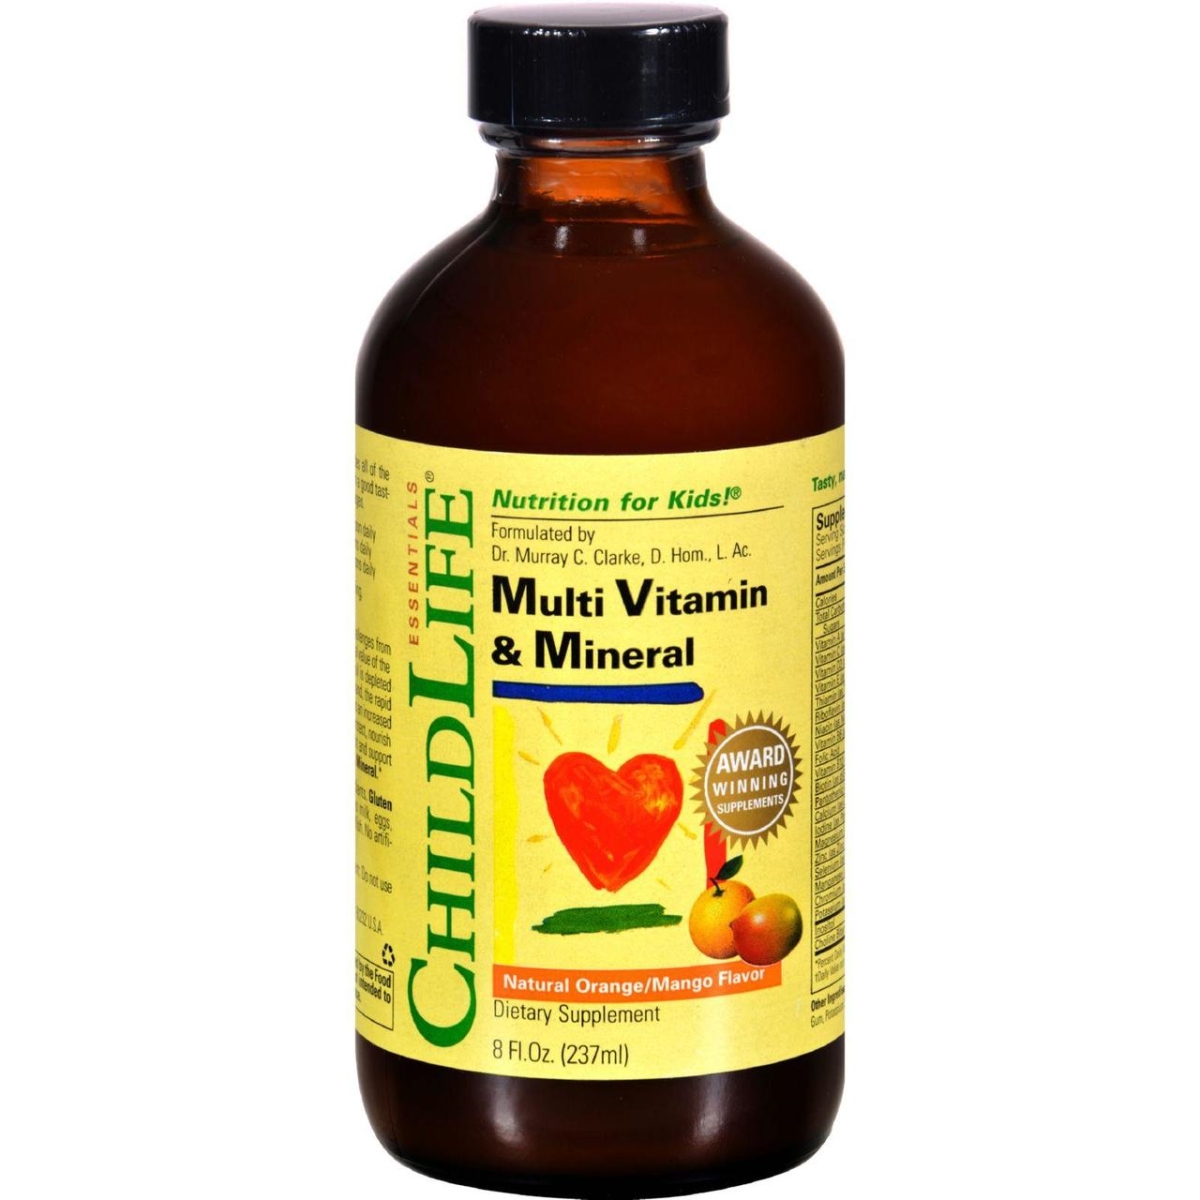 Child Life Hg0408773 8 Fl Oz Multi Vitamin & Mineral - Natural Orange Mango